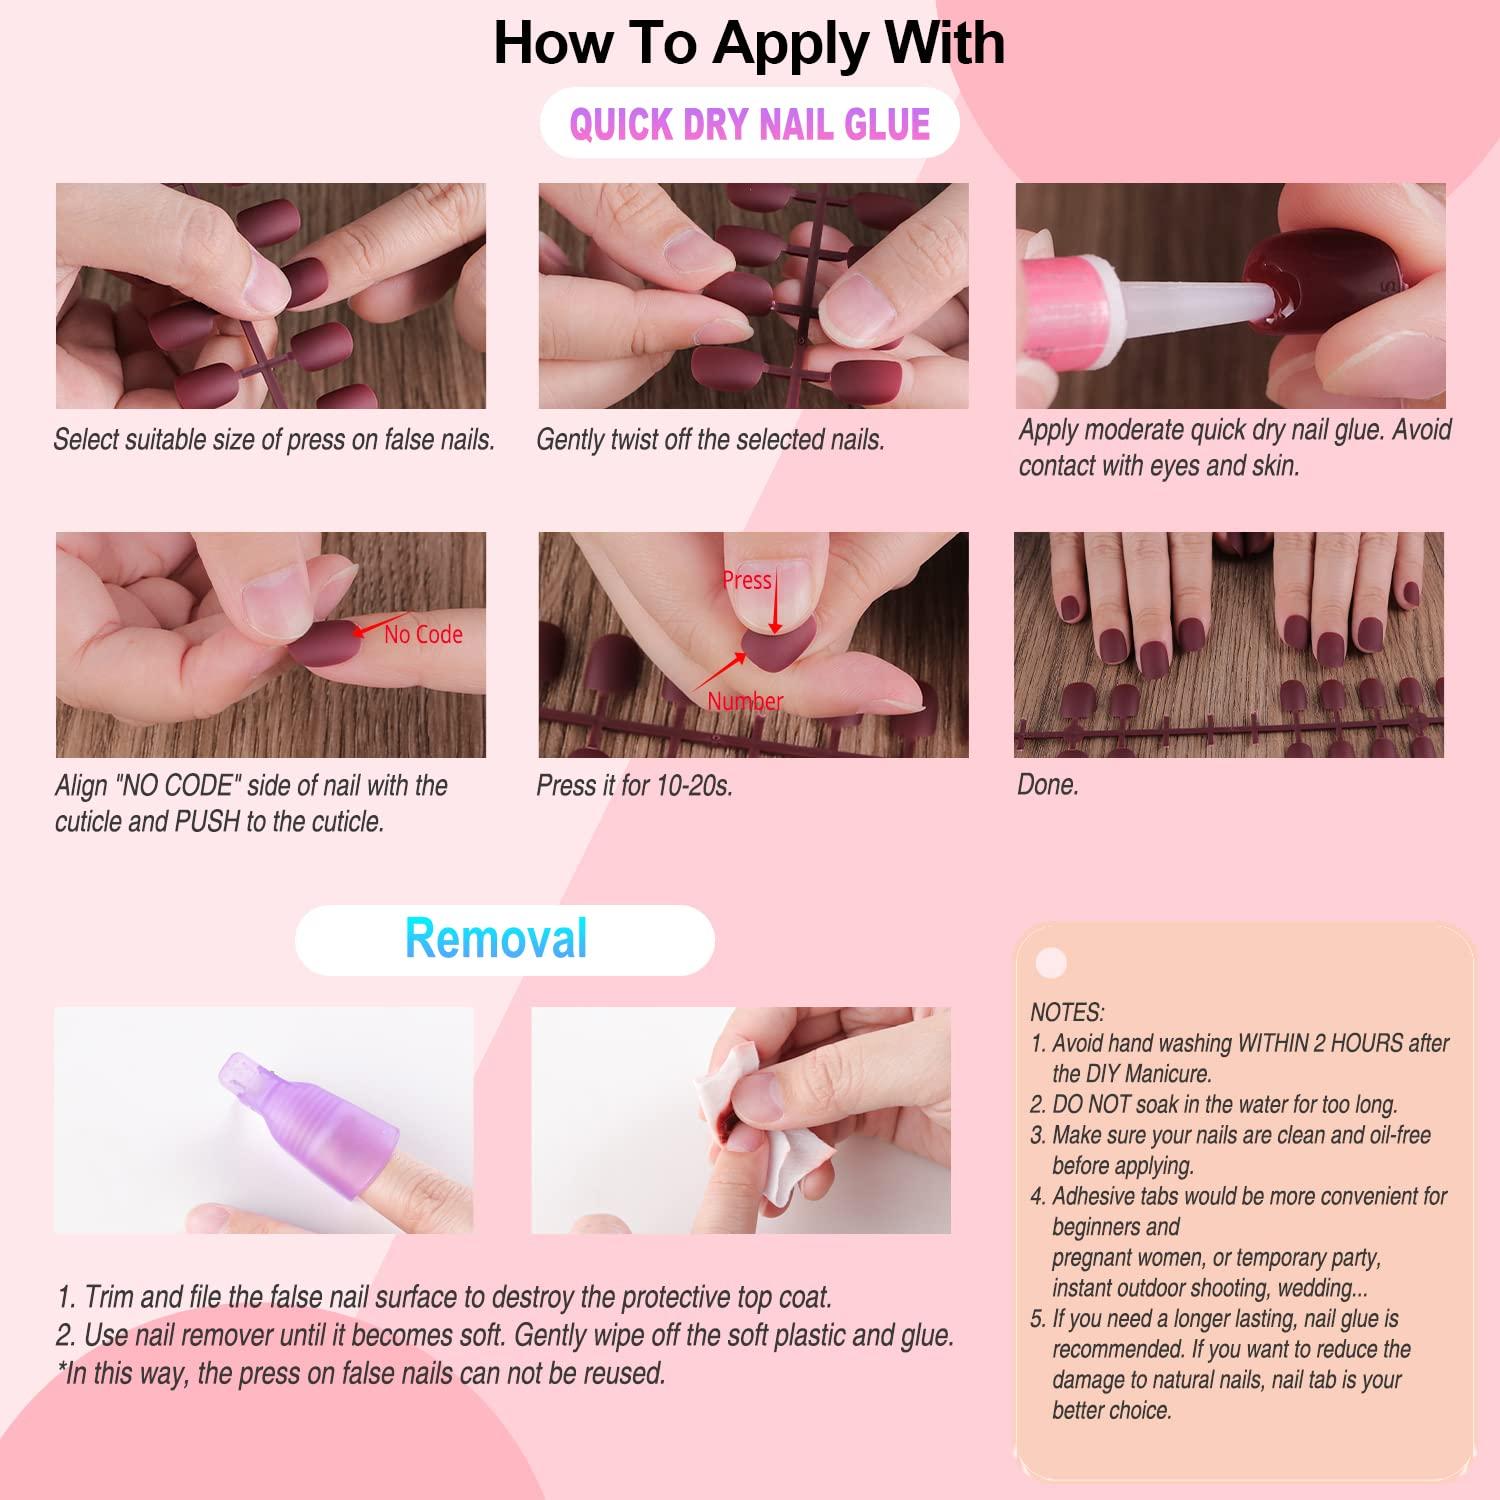 Press on Nail Tool Nail Glue Nail Sticker Glue Remover Nail Kit